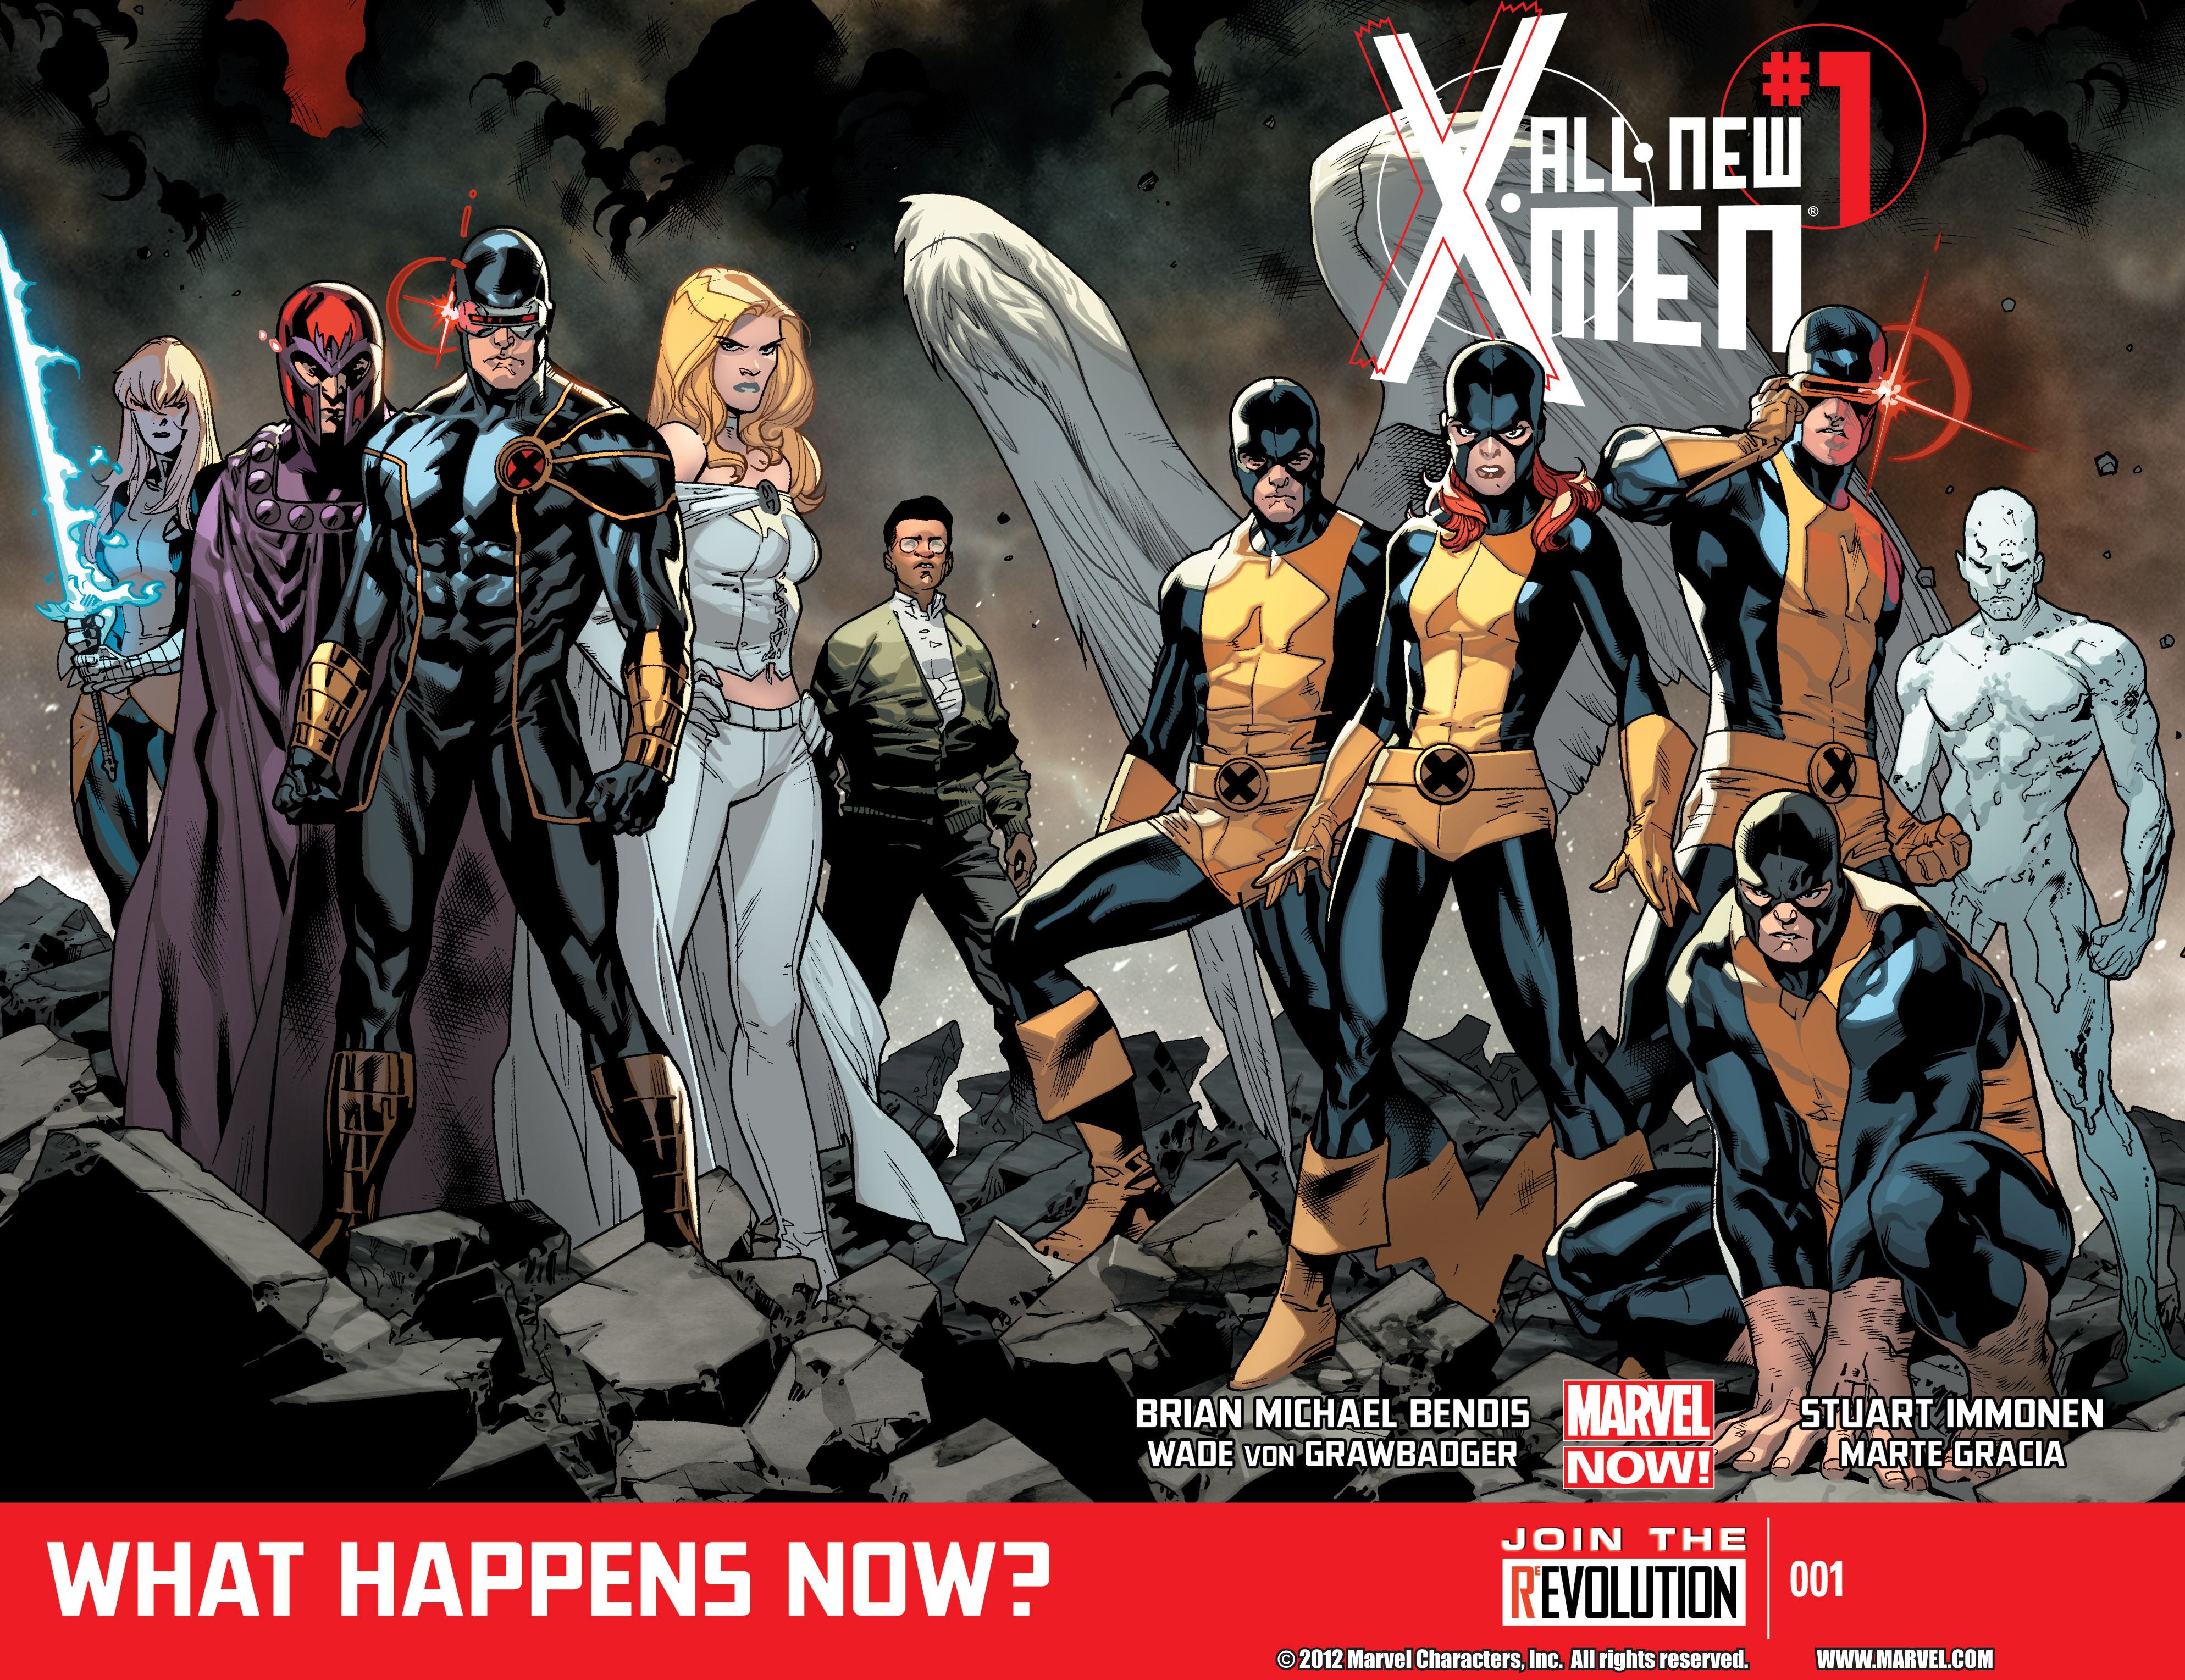 New X-Men #10